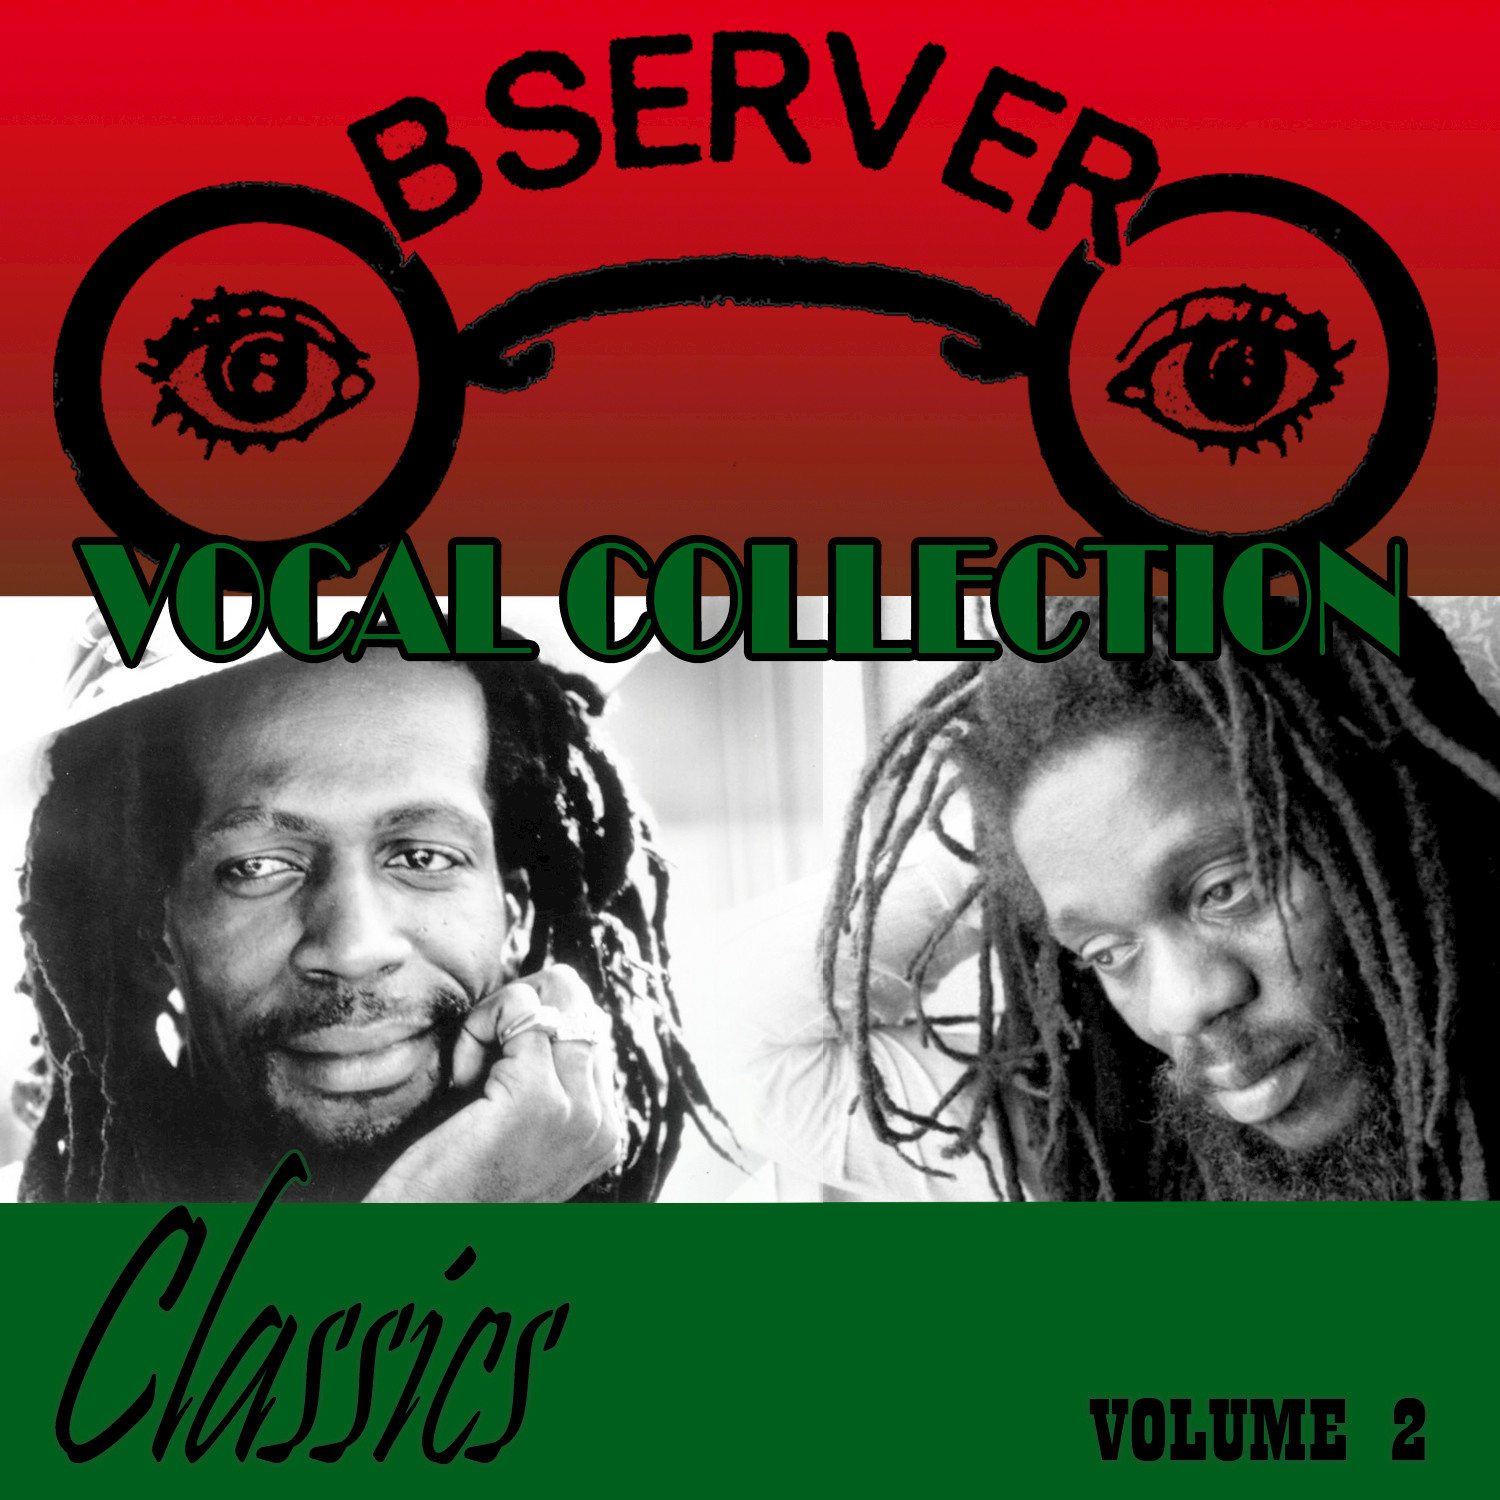 Observer Vocal Collection, Vol. 2: Classics